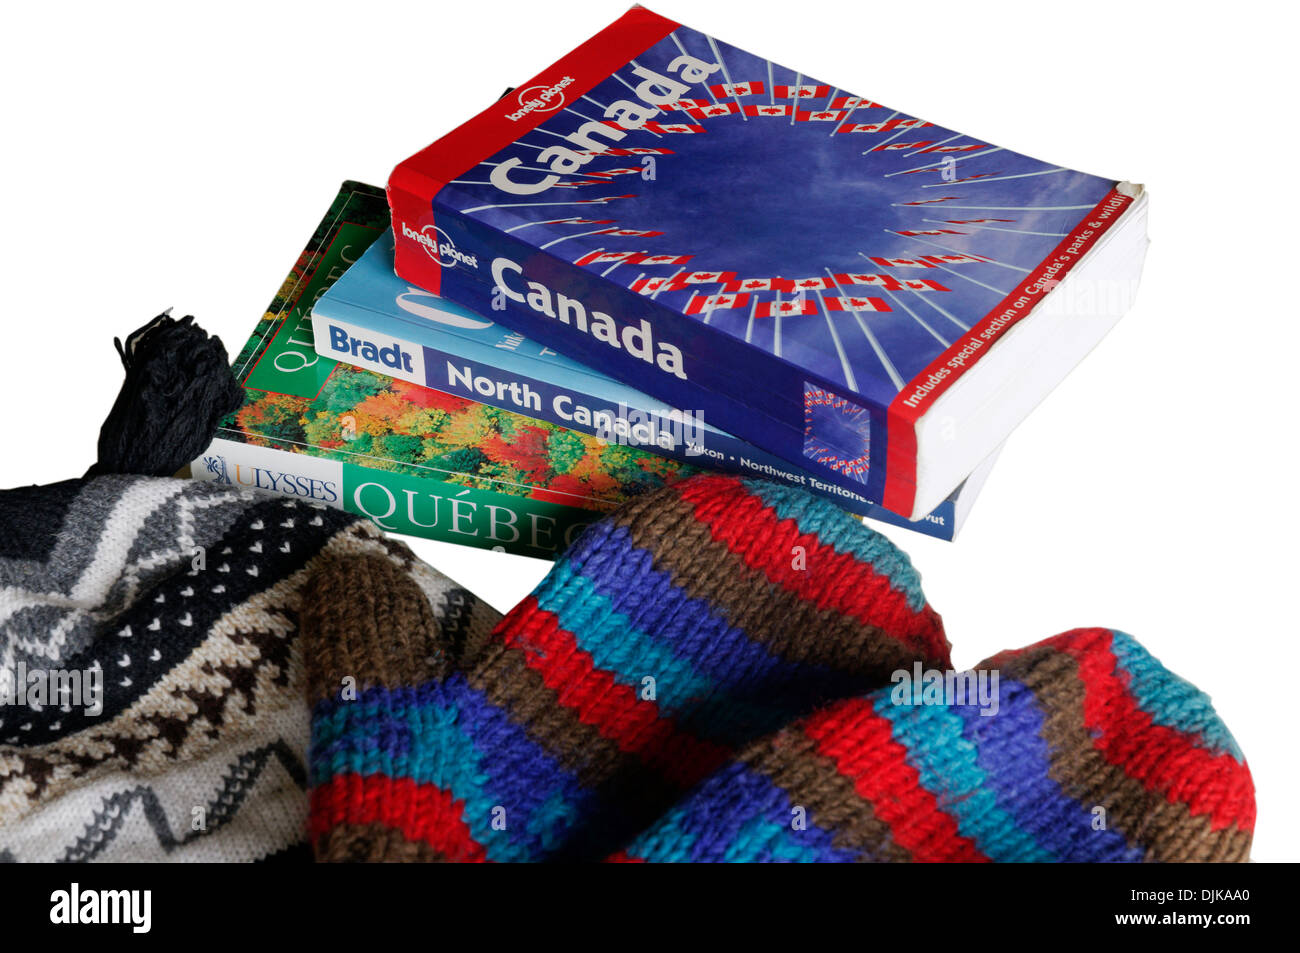 Guides pour le Canada avec bobble hat et mitaines Banque D'Images